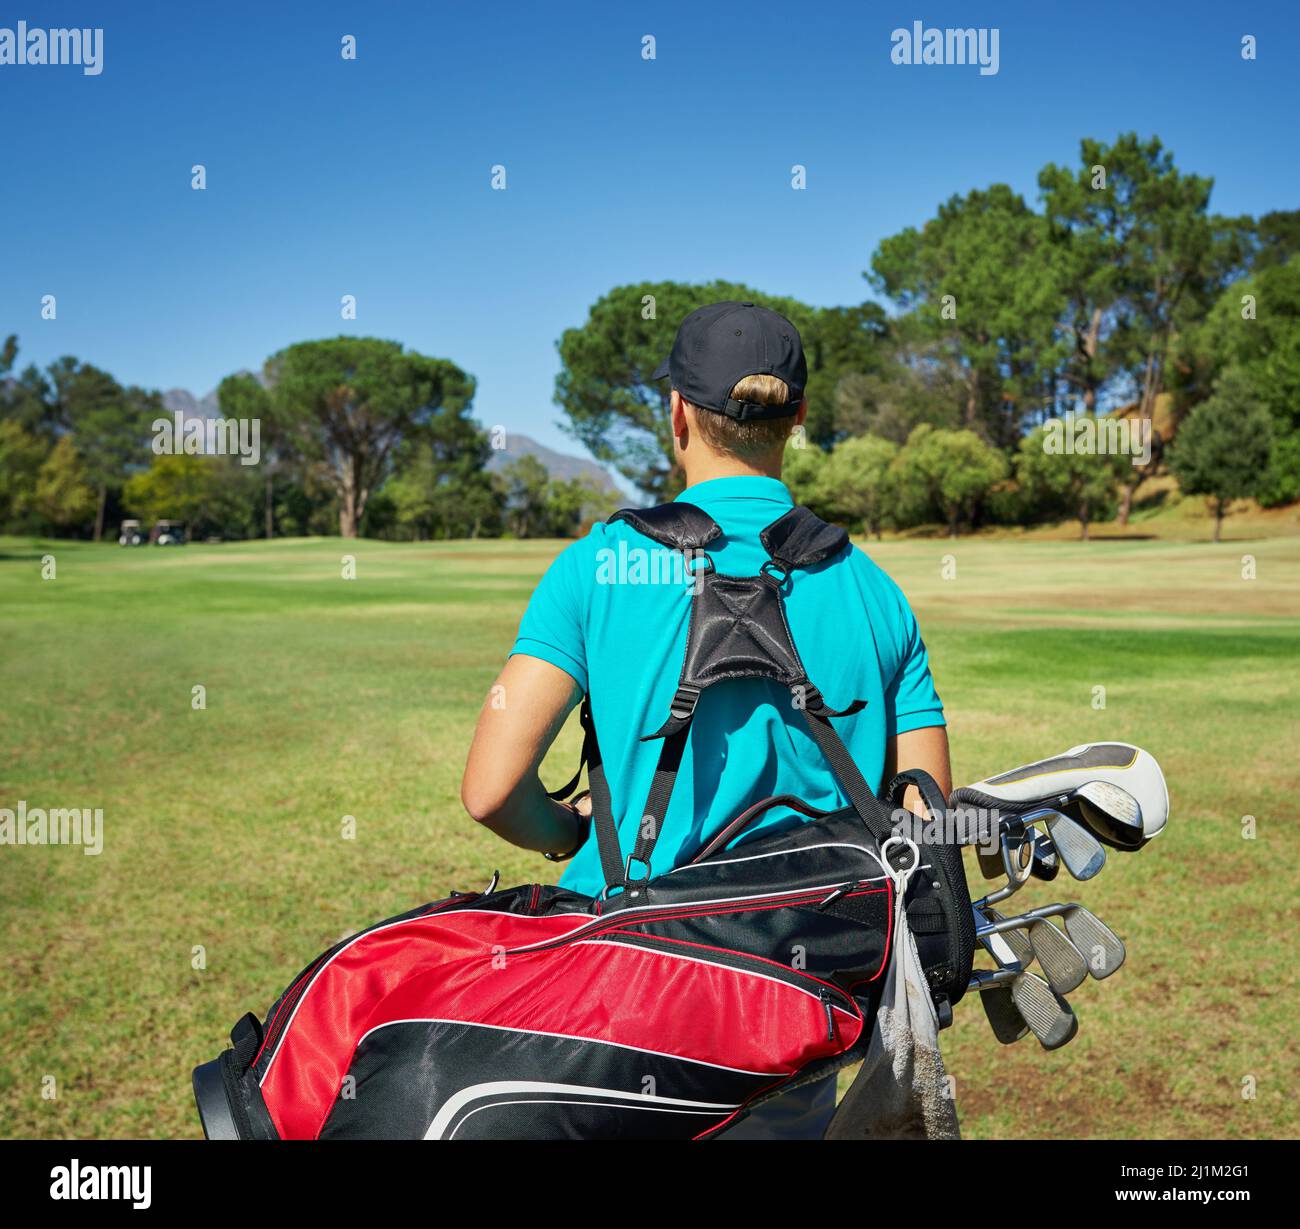 Vorbereitet und bereit, Golf zu spielen. Aufnahme eines nicht erkennbaren jungen Mannes, der mit seiner Golfausrüstung draußen auf einem Golfplatz läuft. Stockfoto